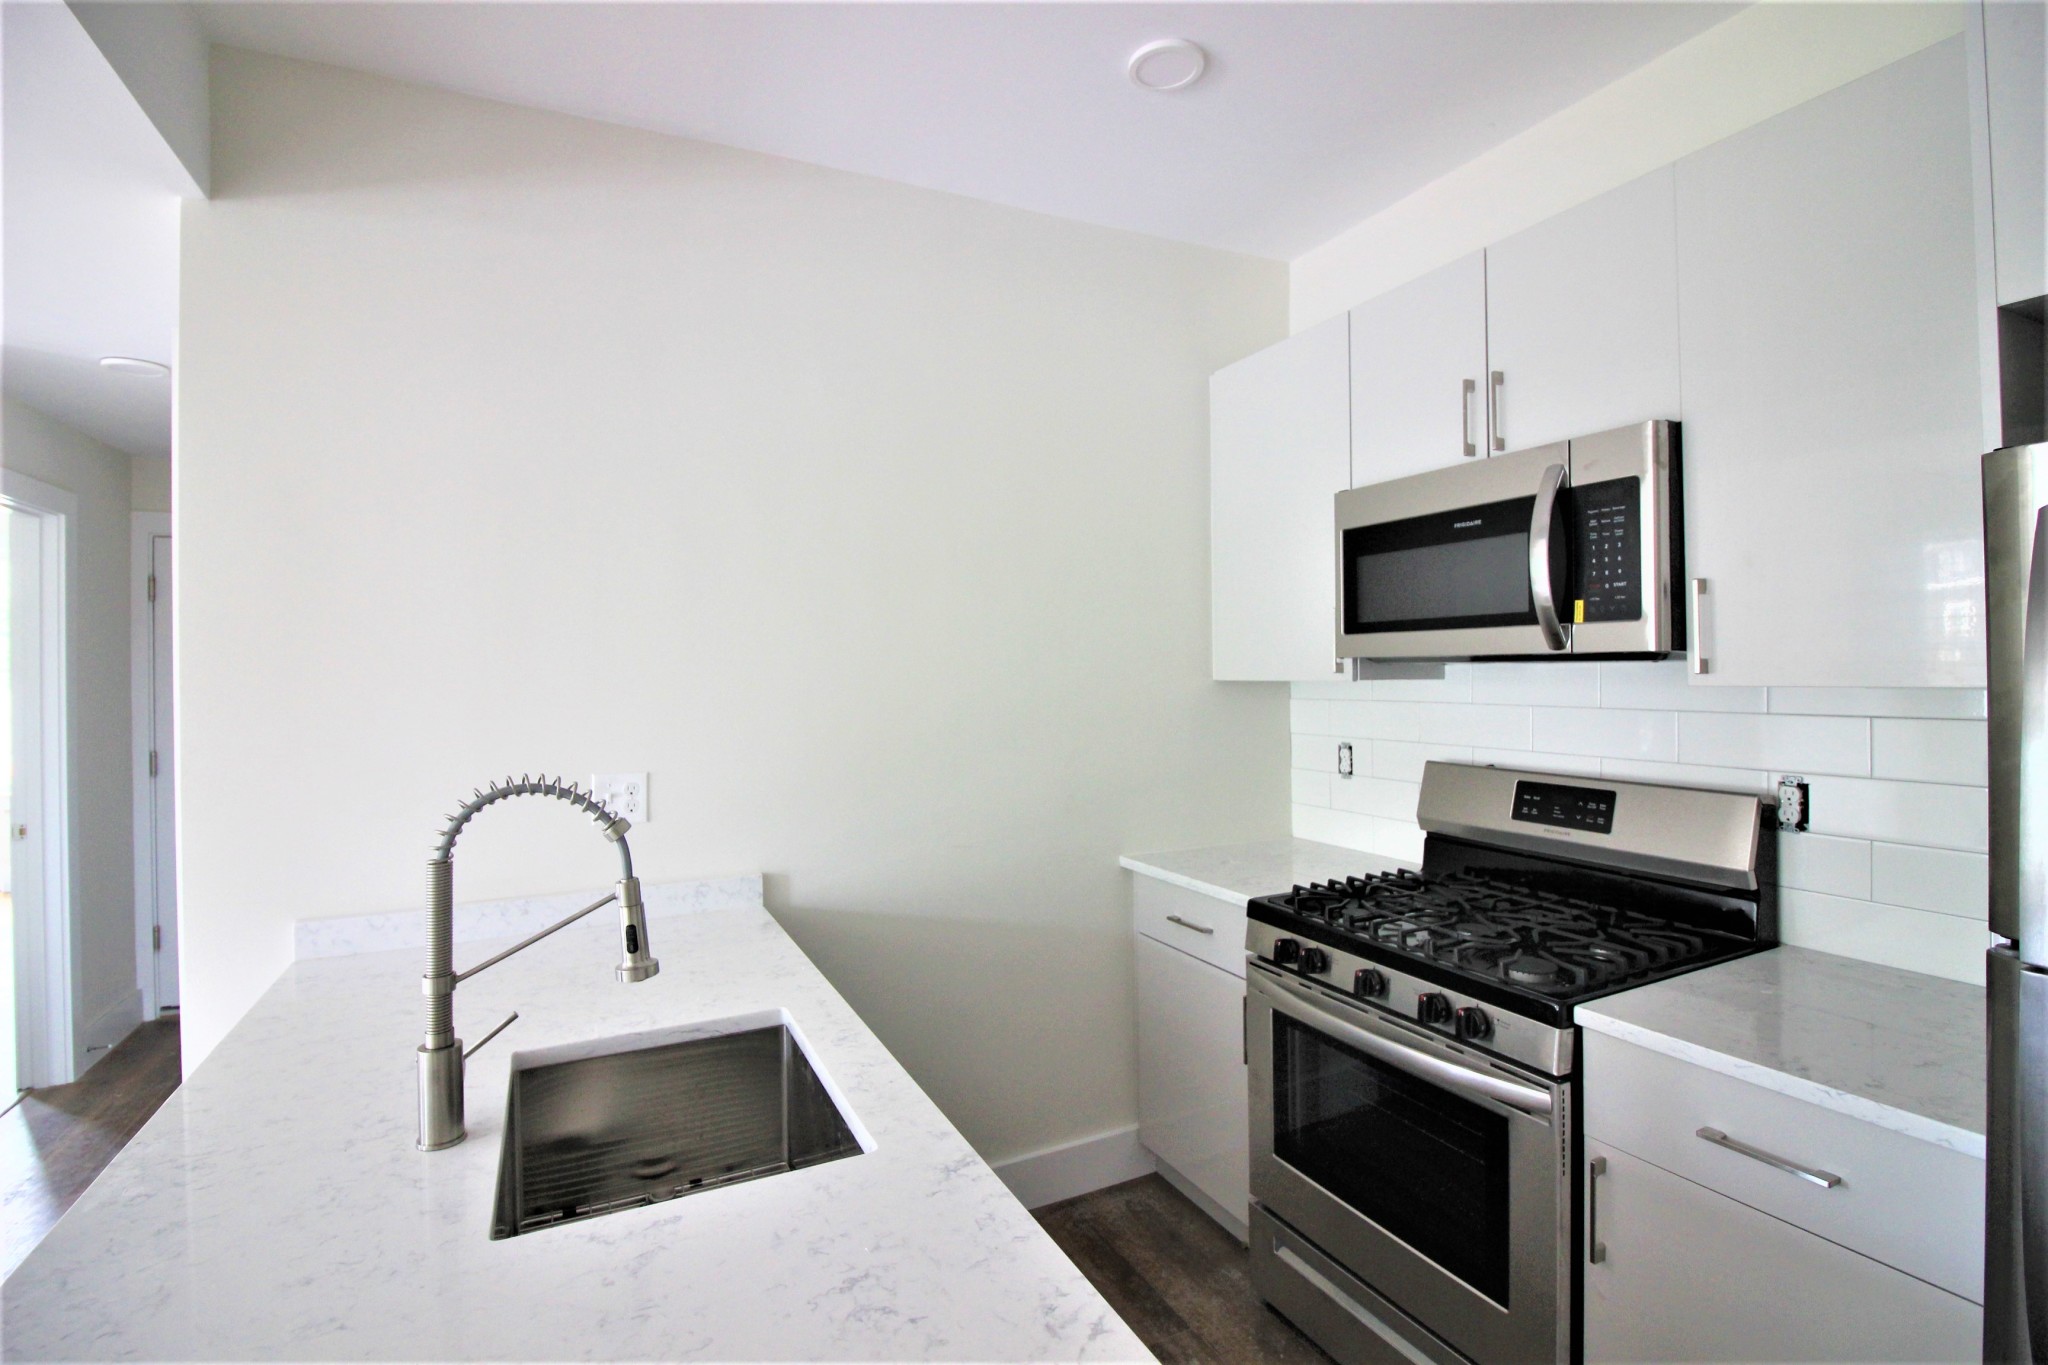 Photos of apartment on Columbia Rd.,Boston MA 02125